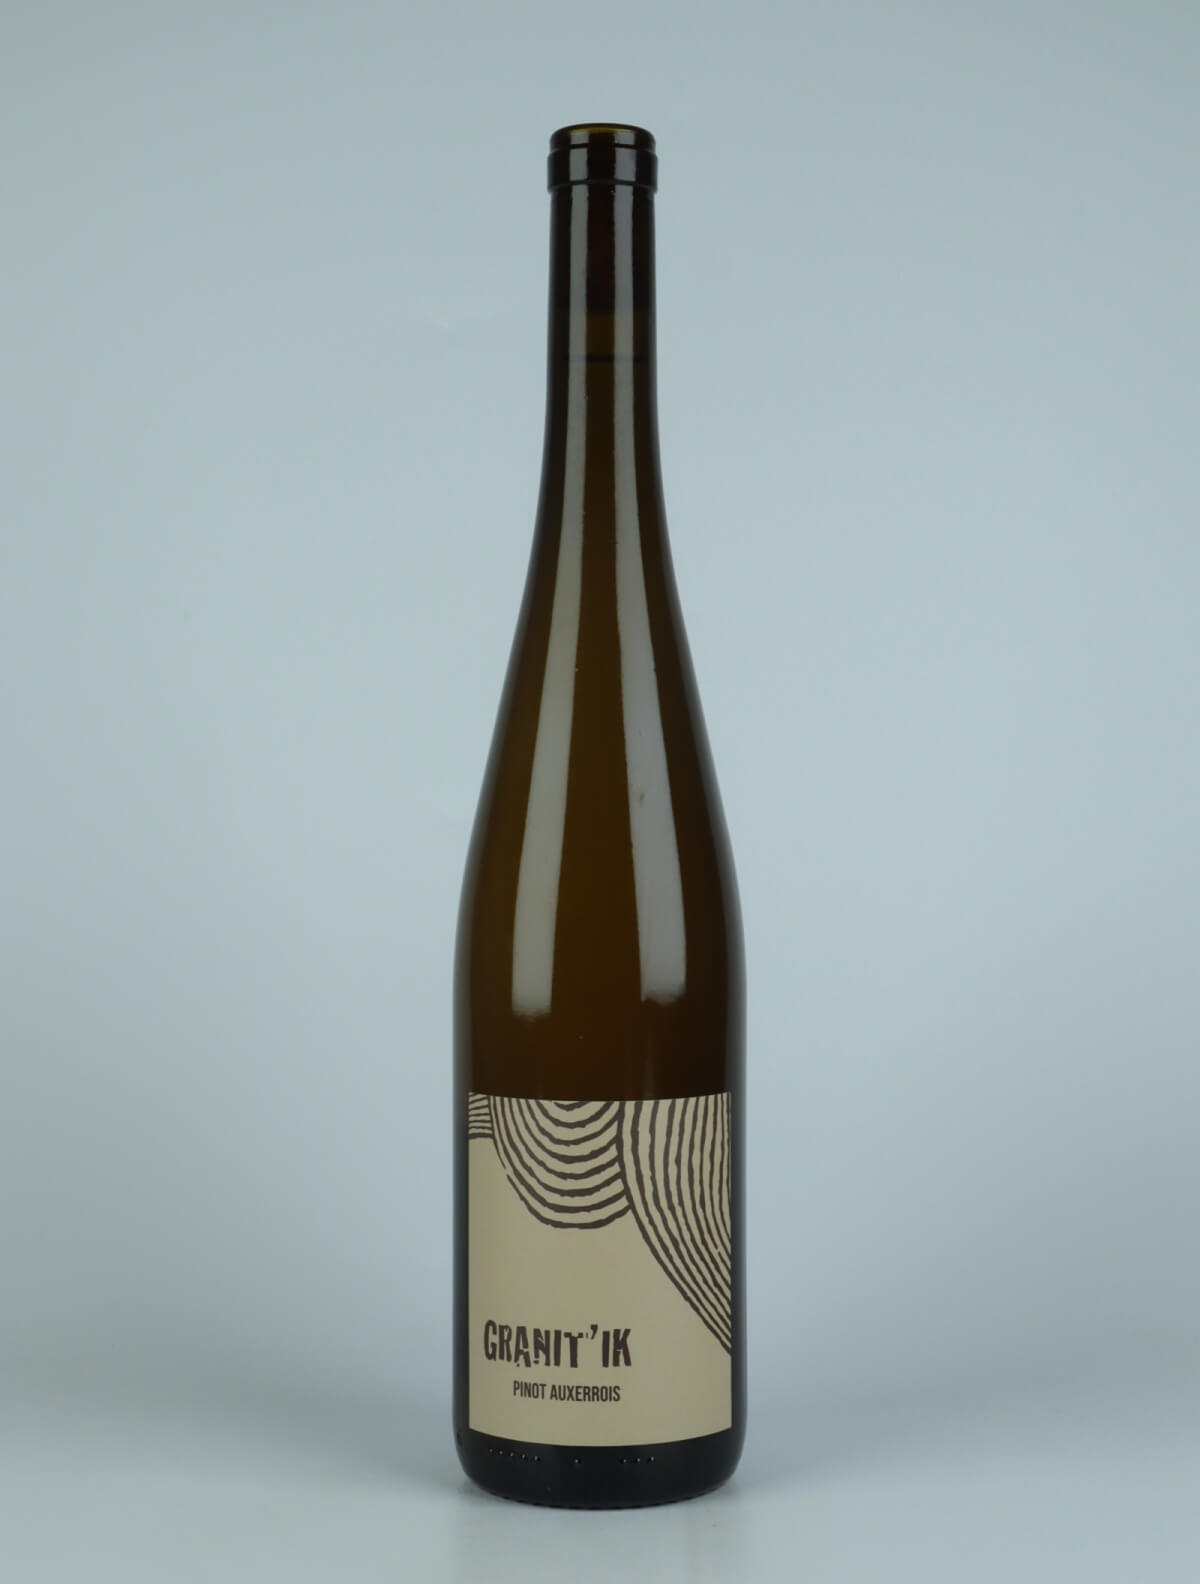 En flaske N.V. Granit'iK (19/20/21) Hvidvin fra Ruhlmann Dirringer, Alsace i Frankrig